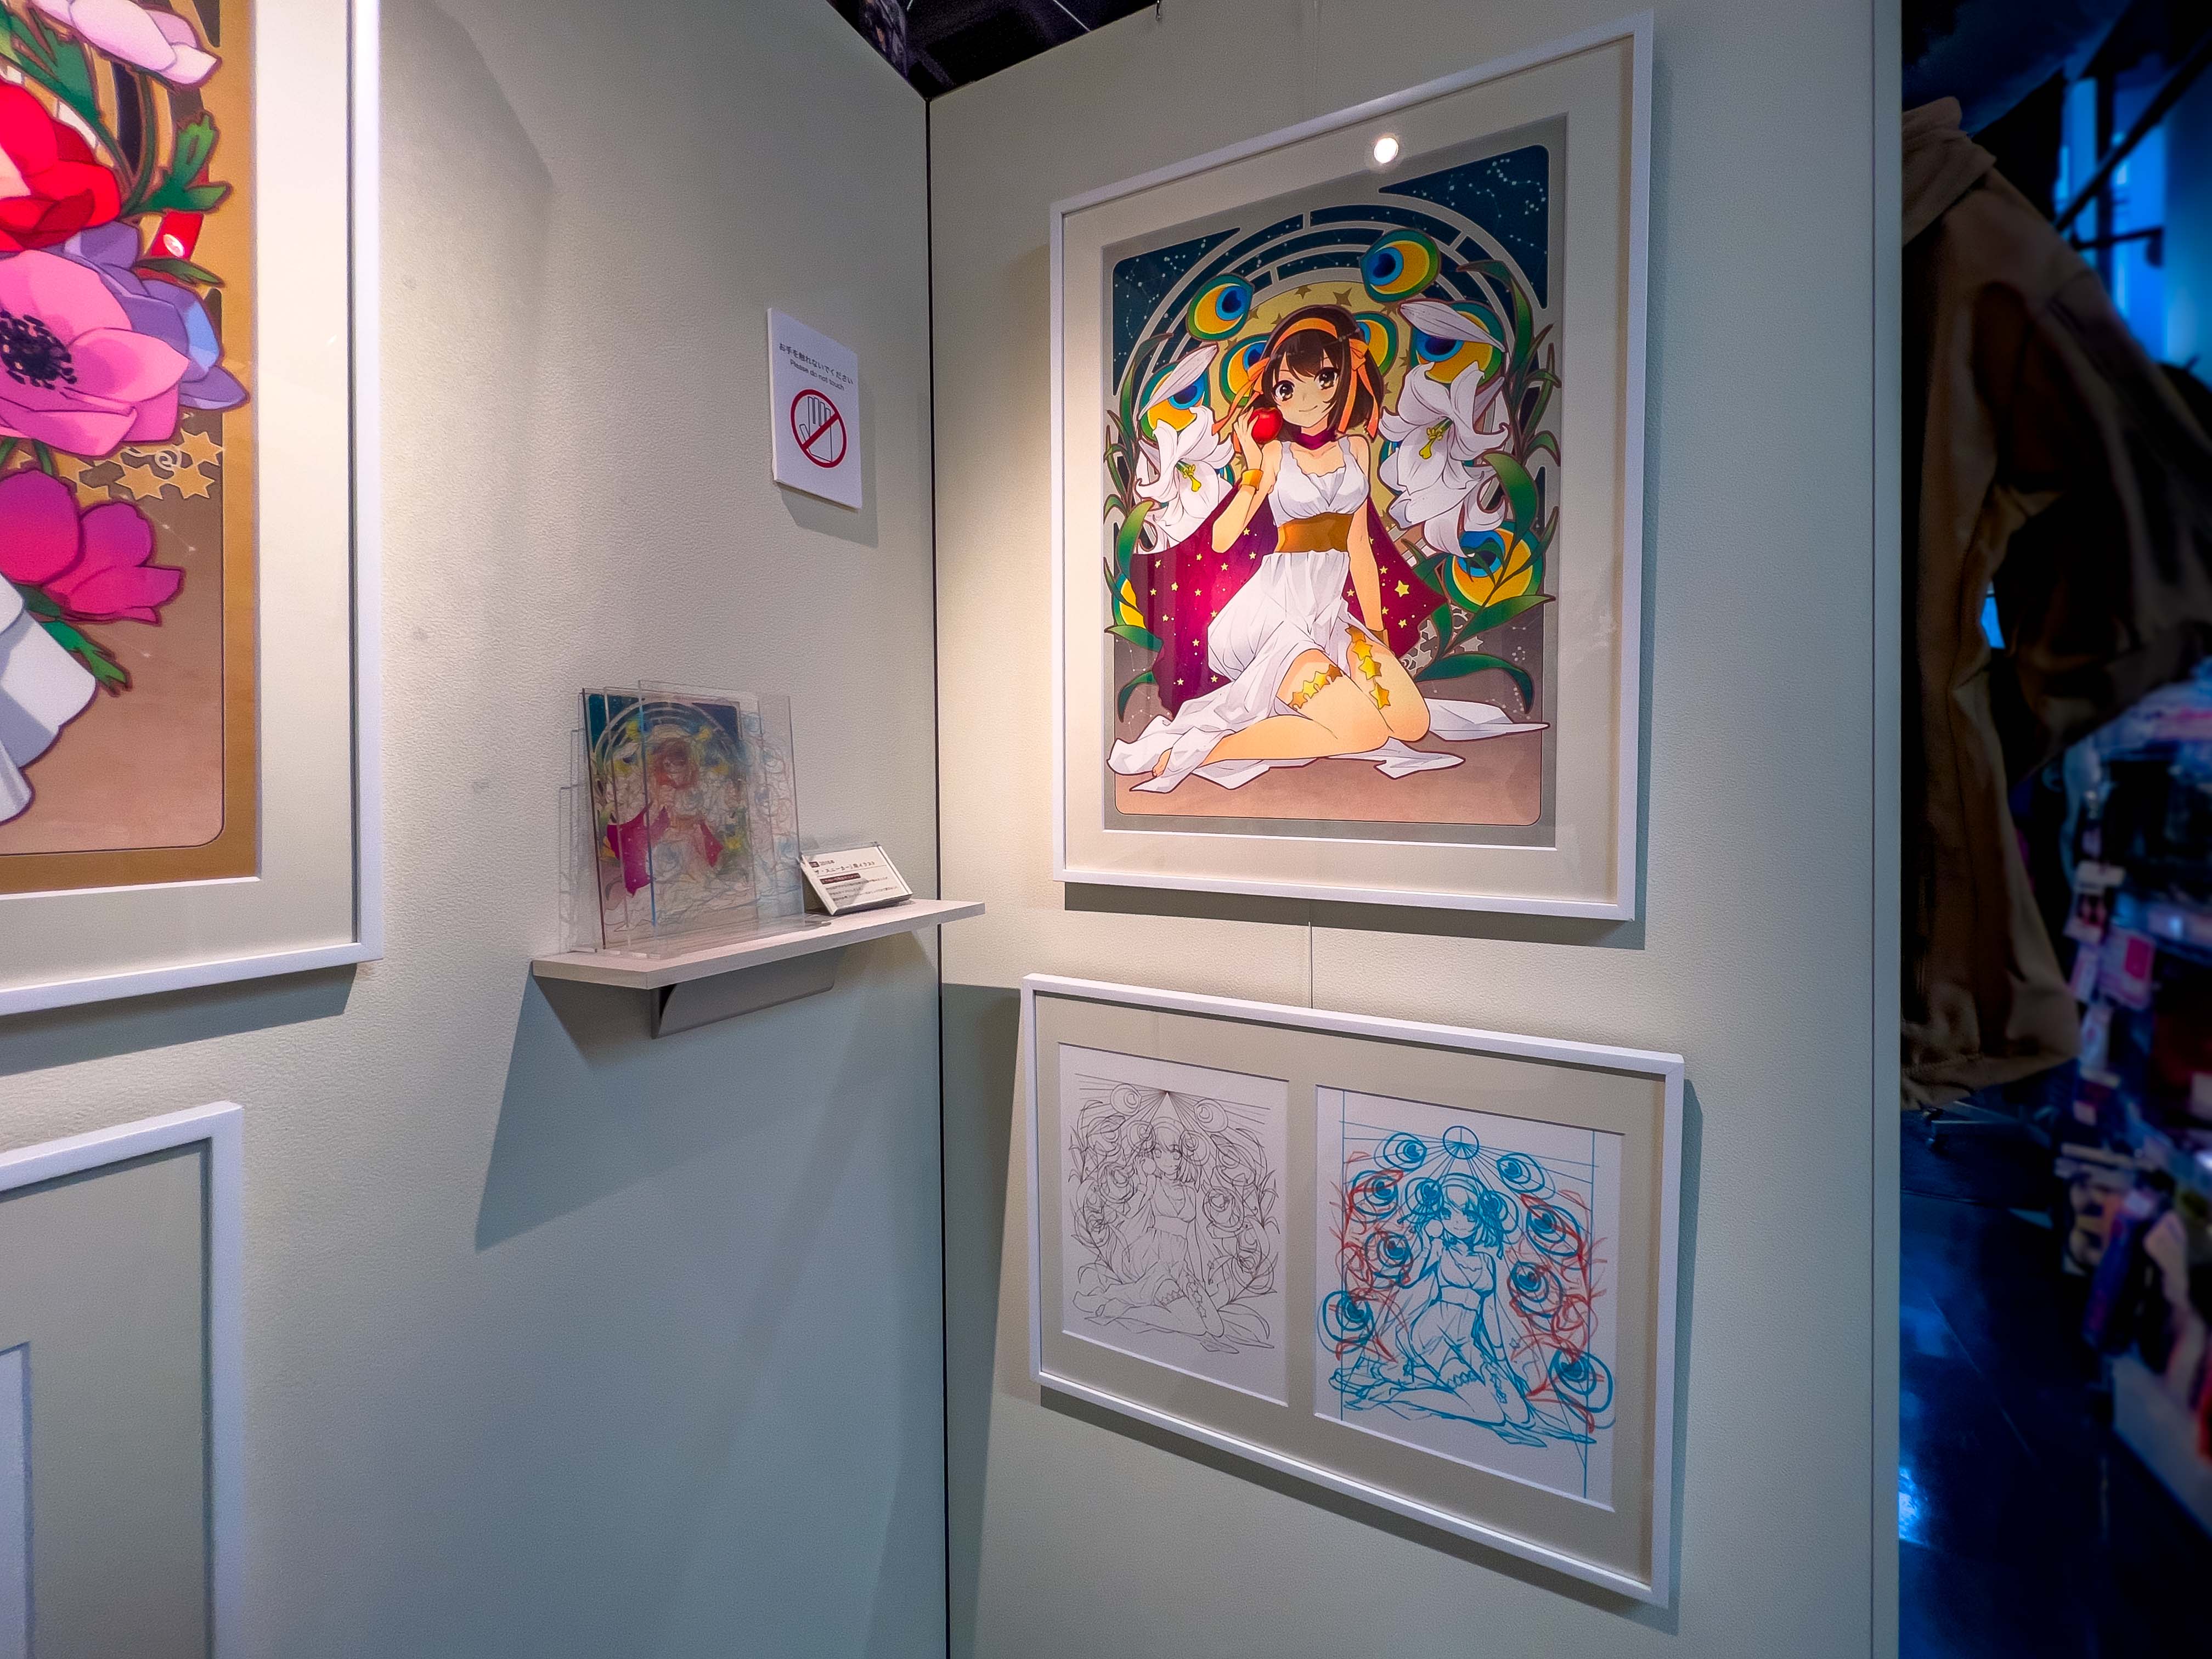 Noizi Ito The Melancholy of Haruhi Suzumiya Artworks Exhibition